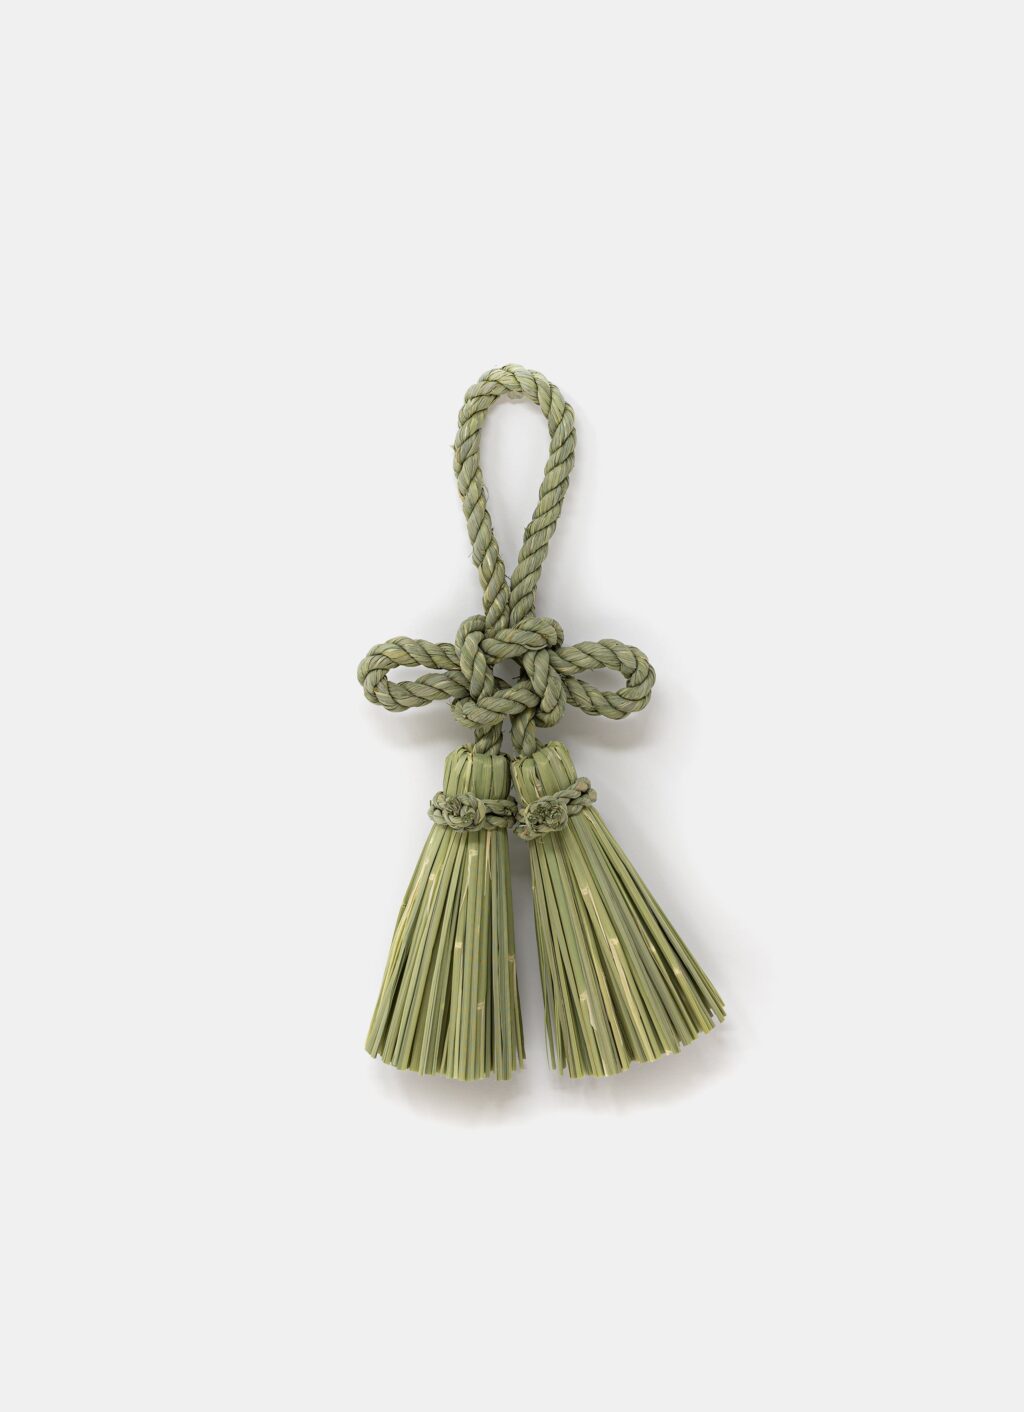 Warazaiku Takubo - Handwoven Straw Amulet - Enishi